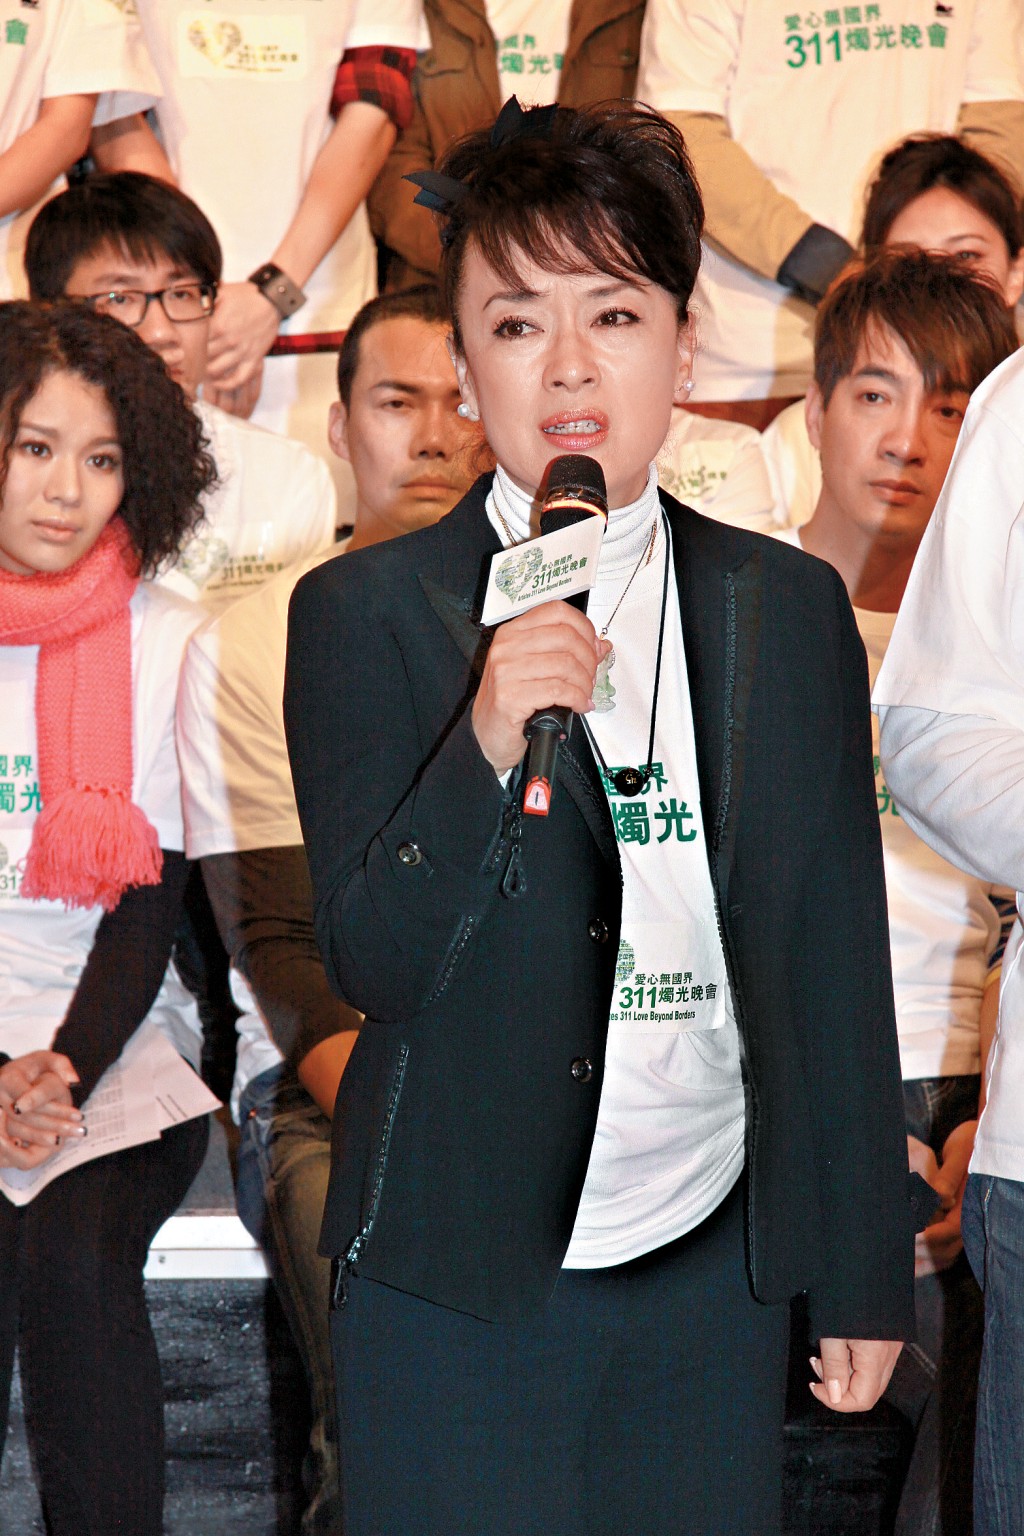 翁倩玉于2011年出席香港演艺界艺人在维园举行为日本赈灾的《爱心无国界311烛光晚会》。